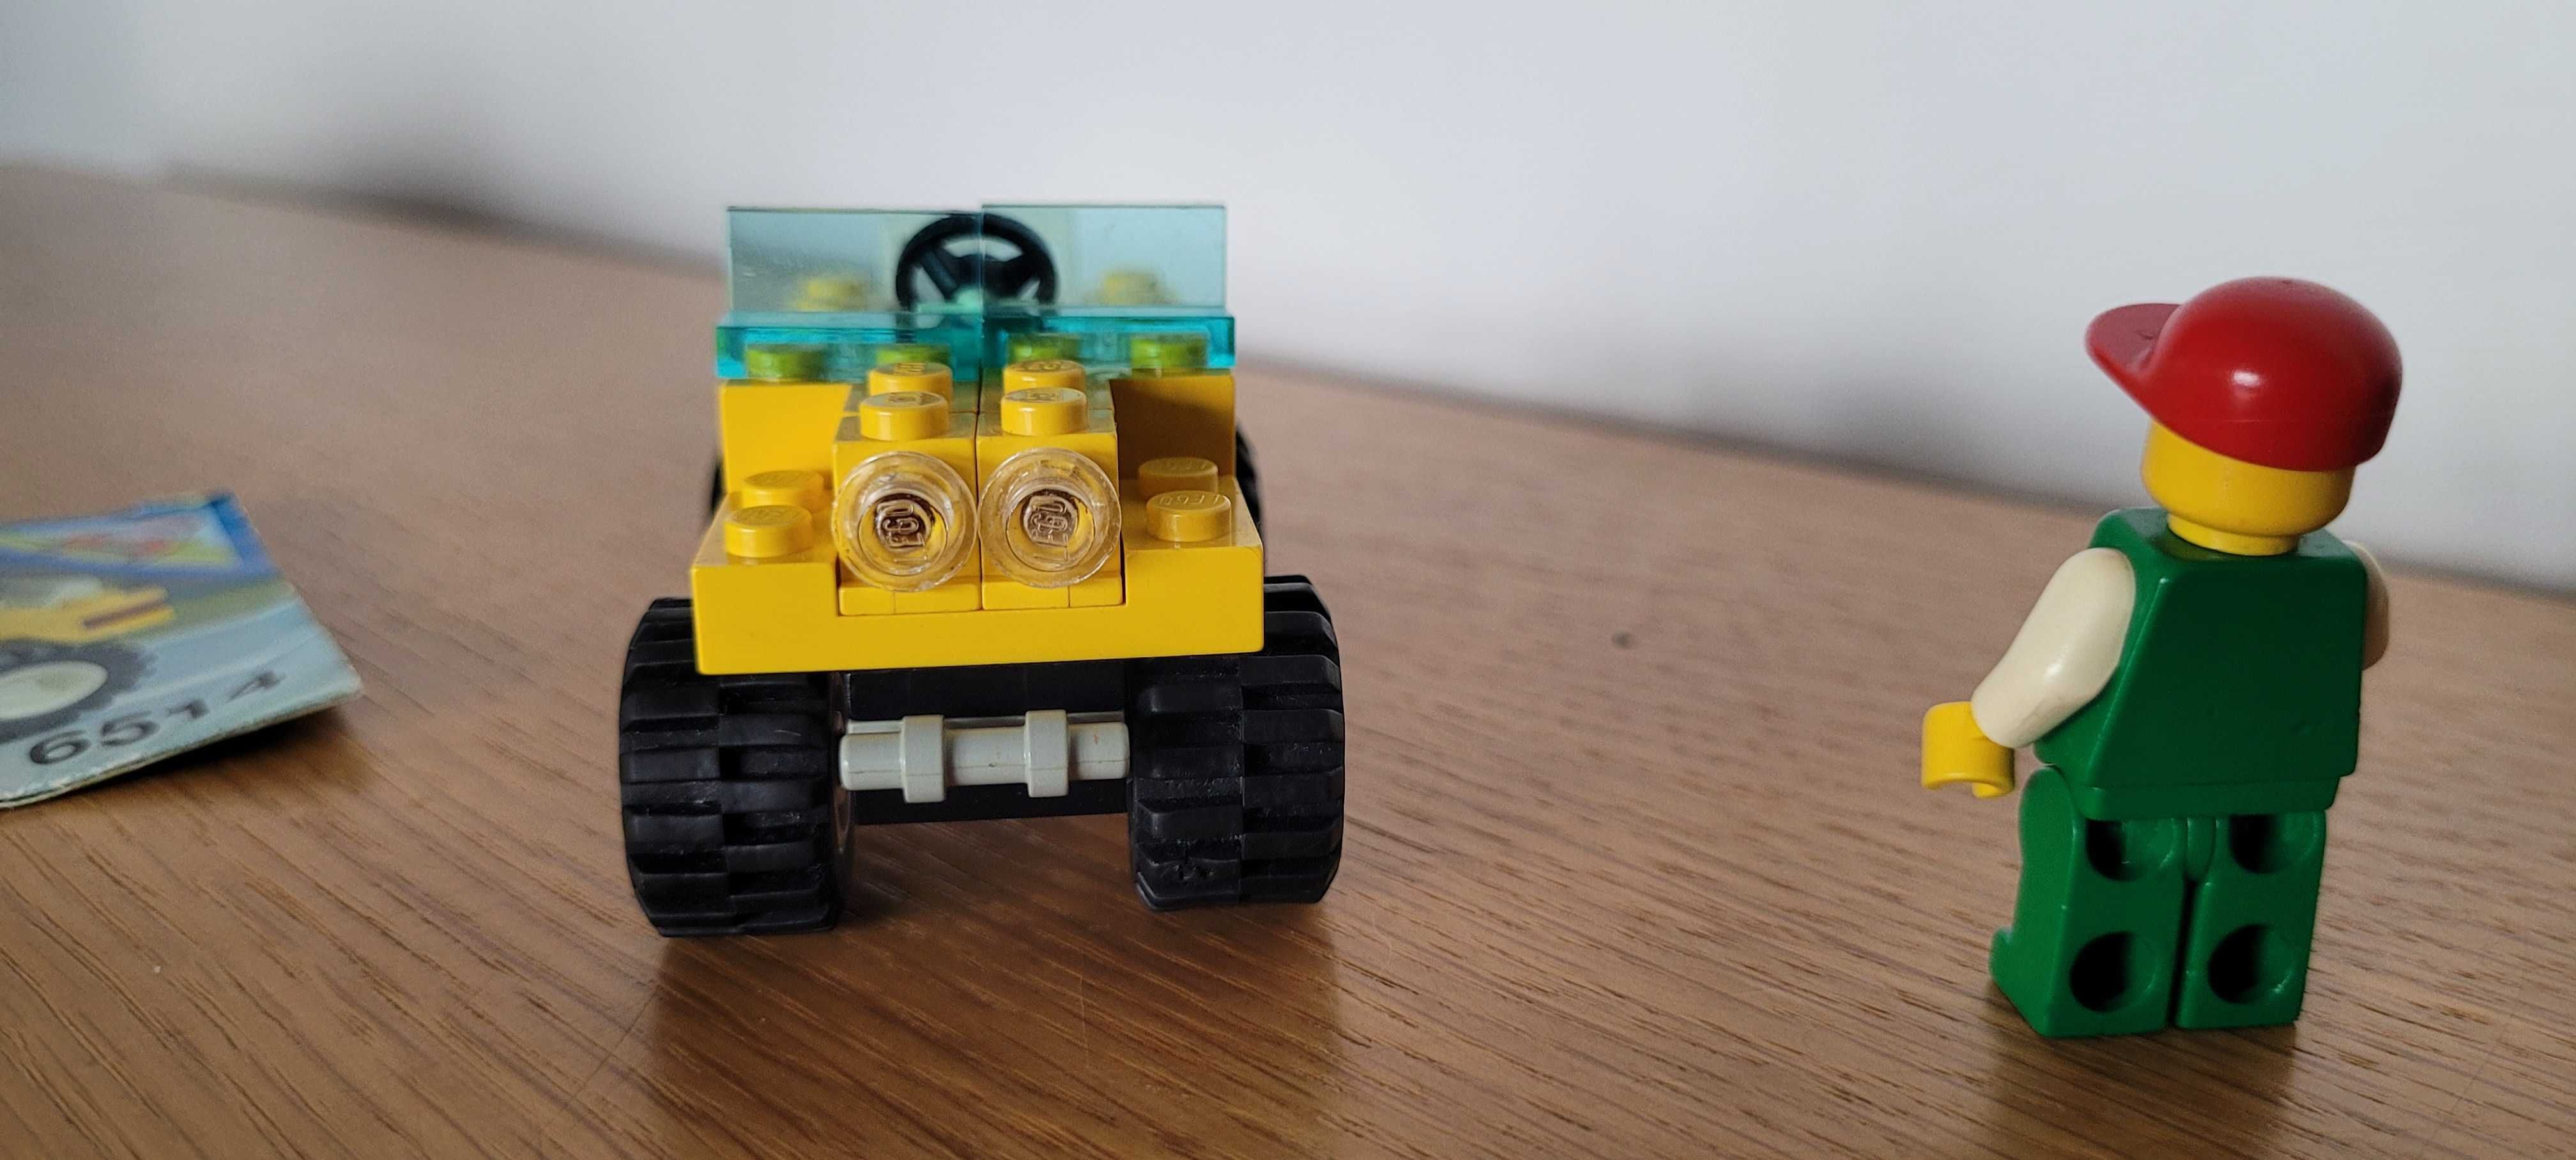 LEGO 6514 - jeep trail ranger klocki + instrukcja